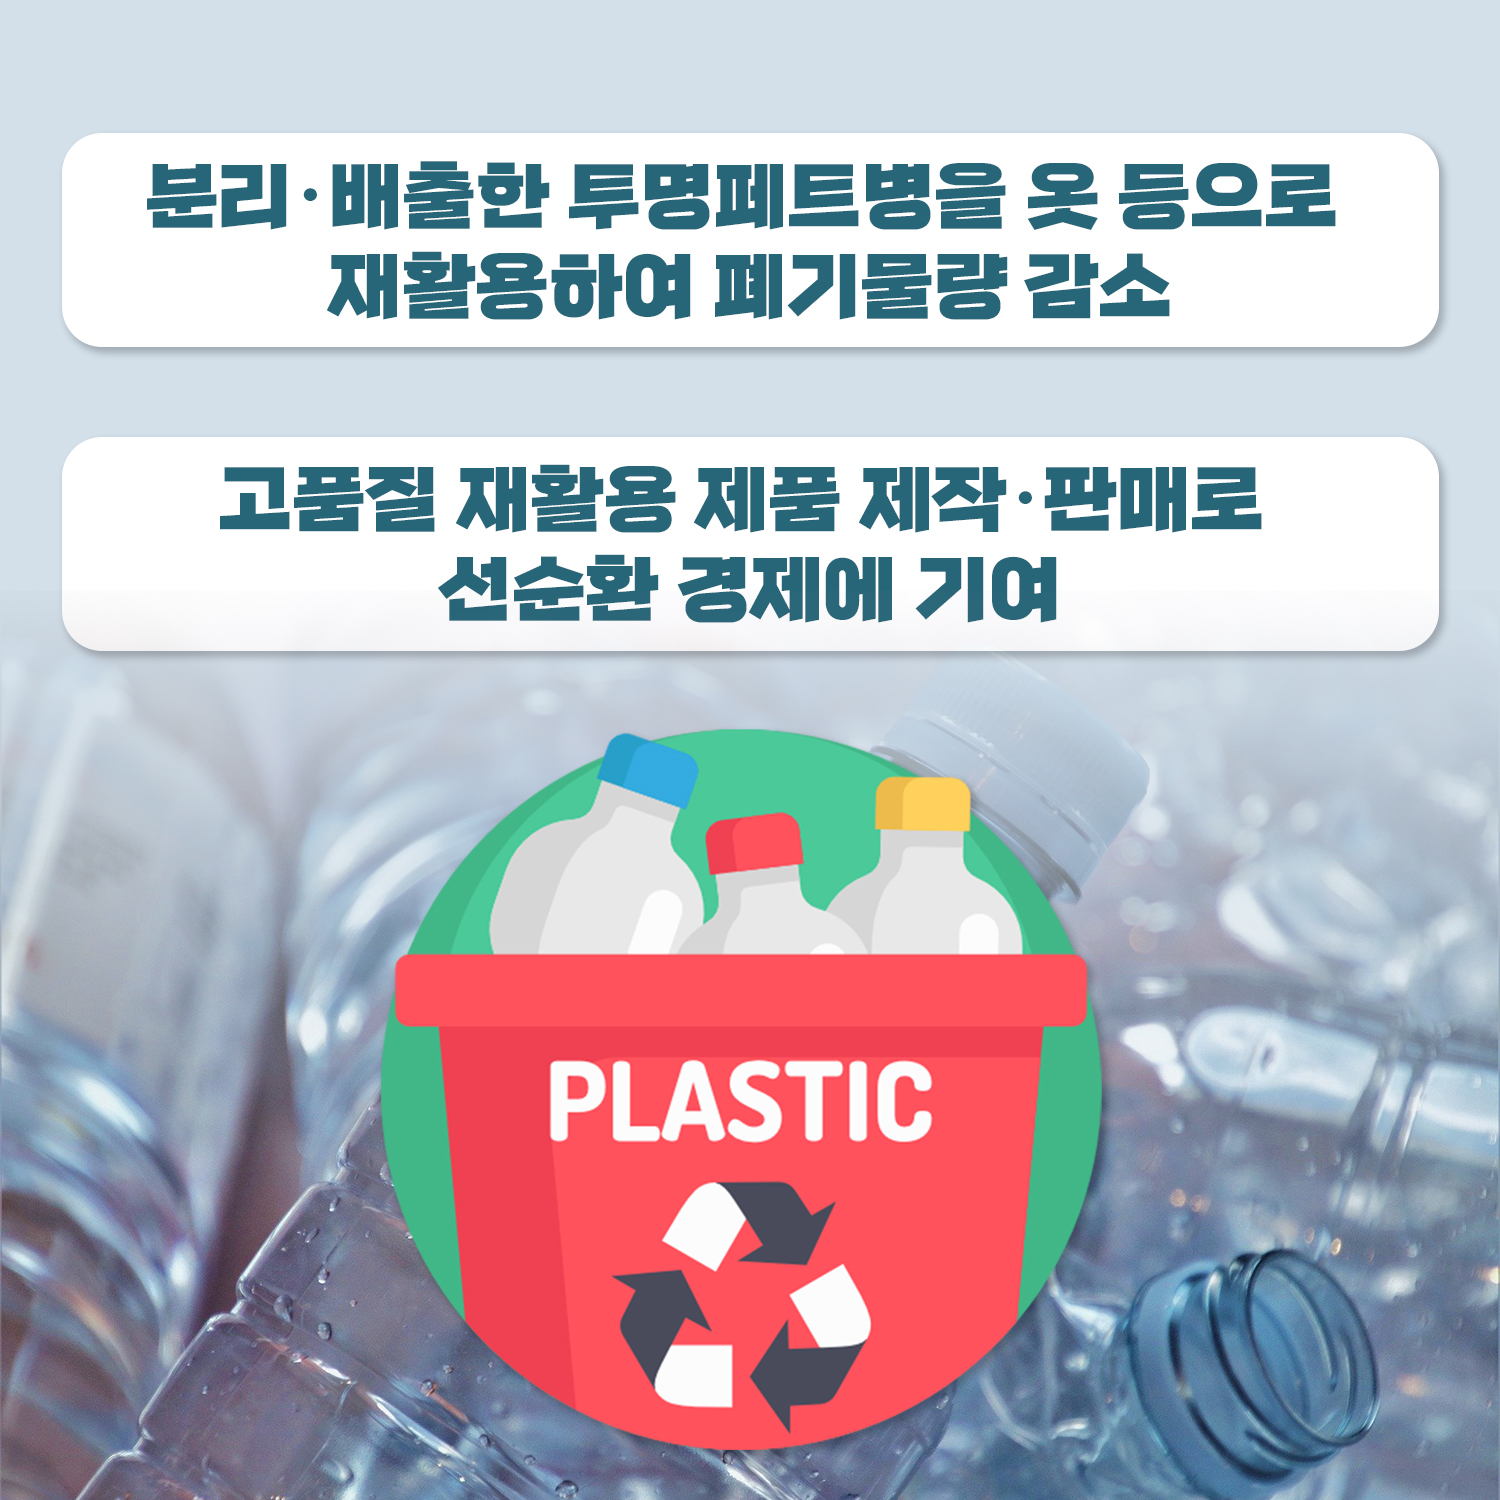 분리·배출한 투명페트병을 옷 등으로 재활용하여 폐기물량 감소. 고품질 재활용 제품 제작·판매로 선순환 경제에 기여